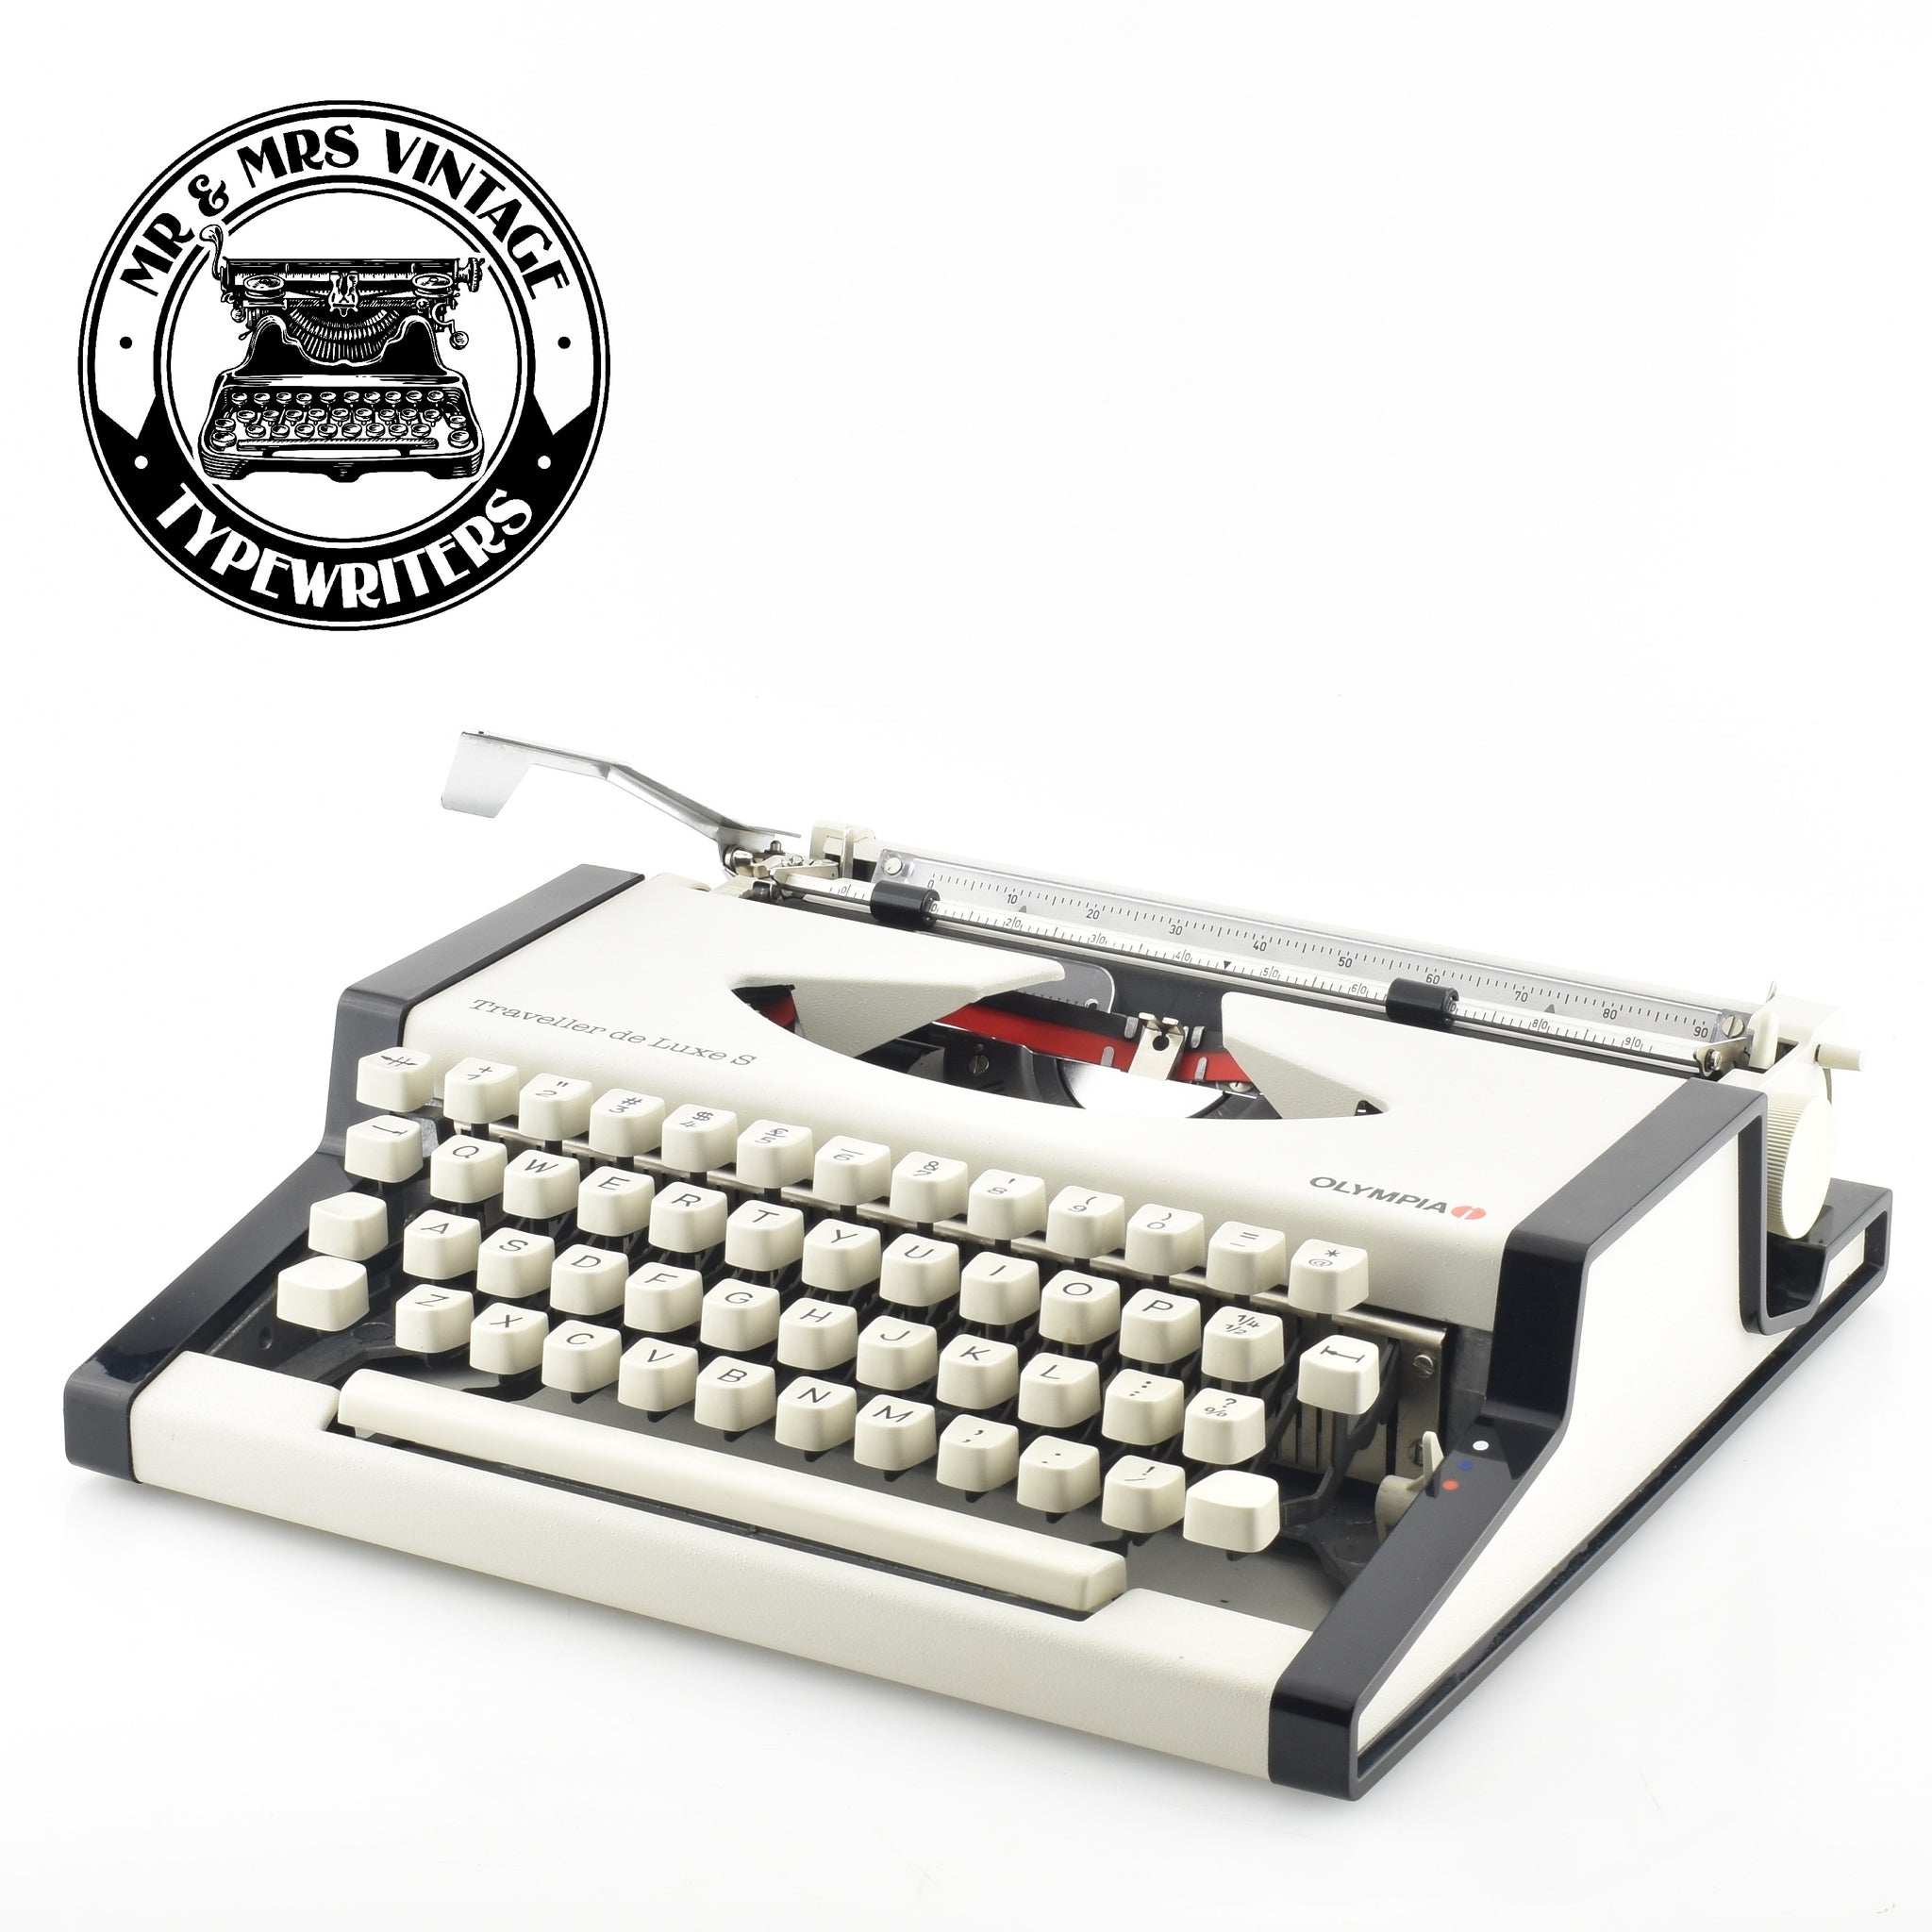 olympia traveller de luxe s typewriter